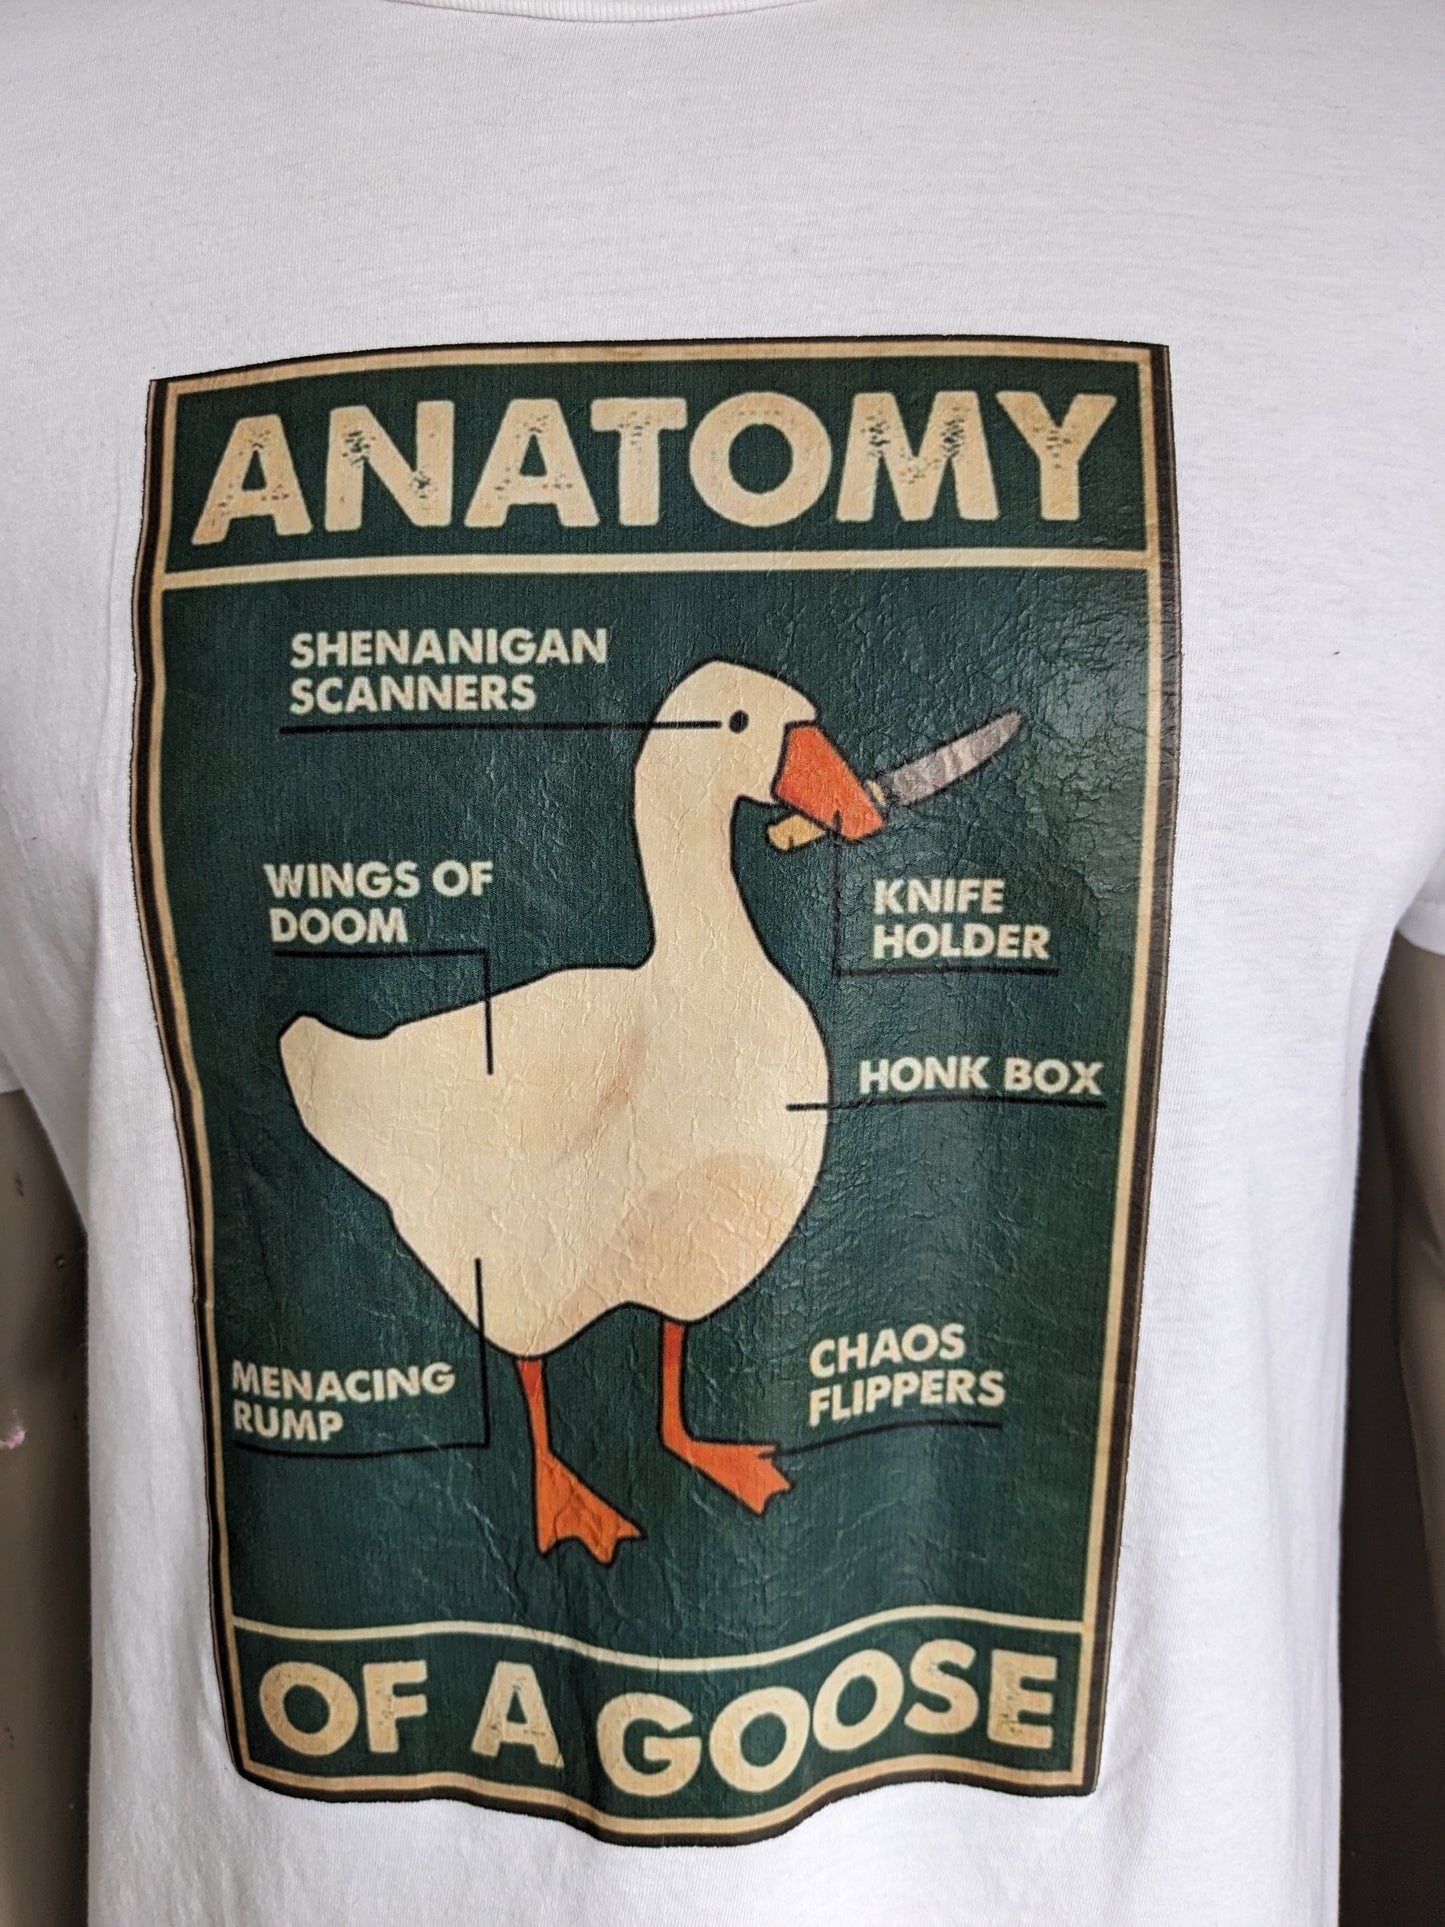 Camicia di anatomia dell'oca. Bianco con stampa. Taglia L.